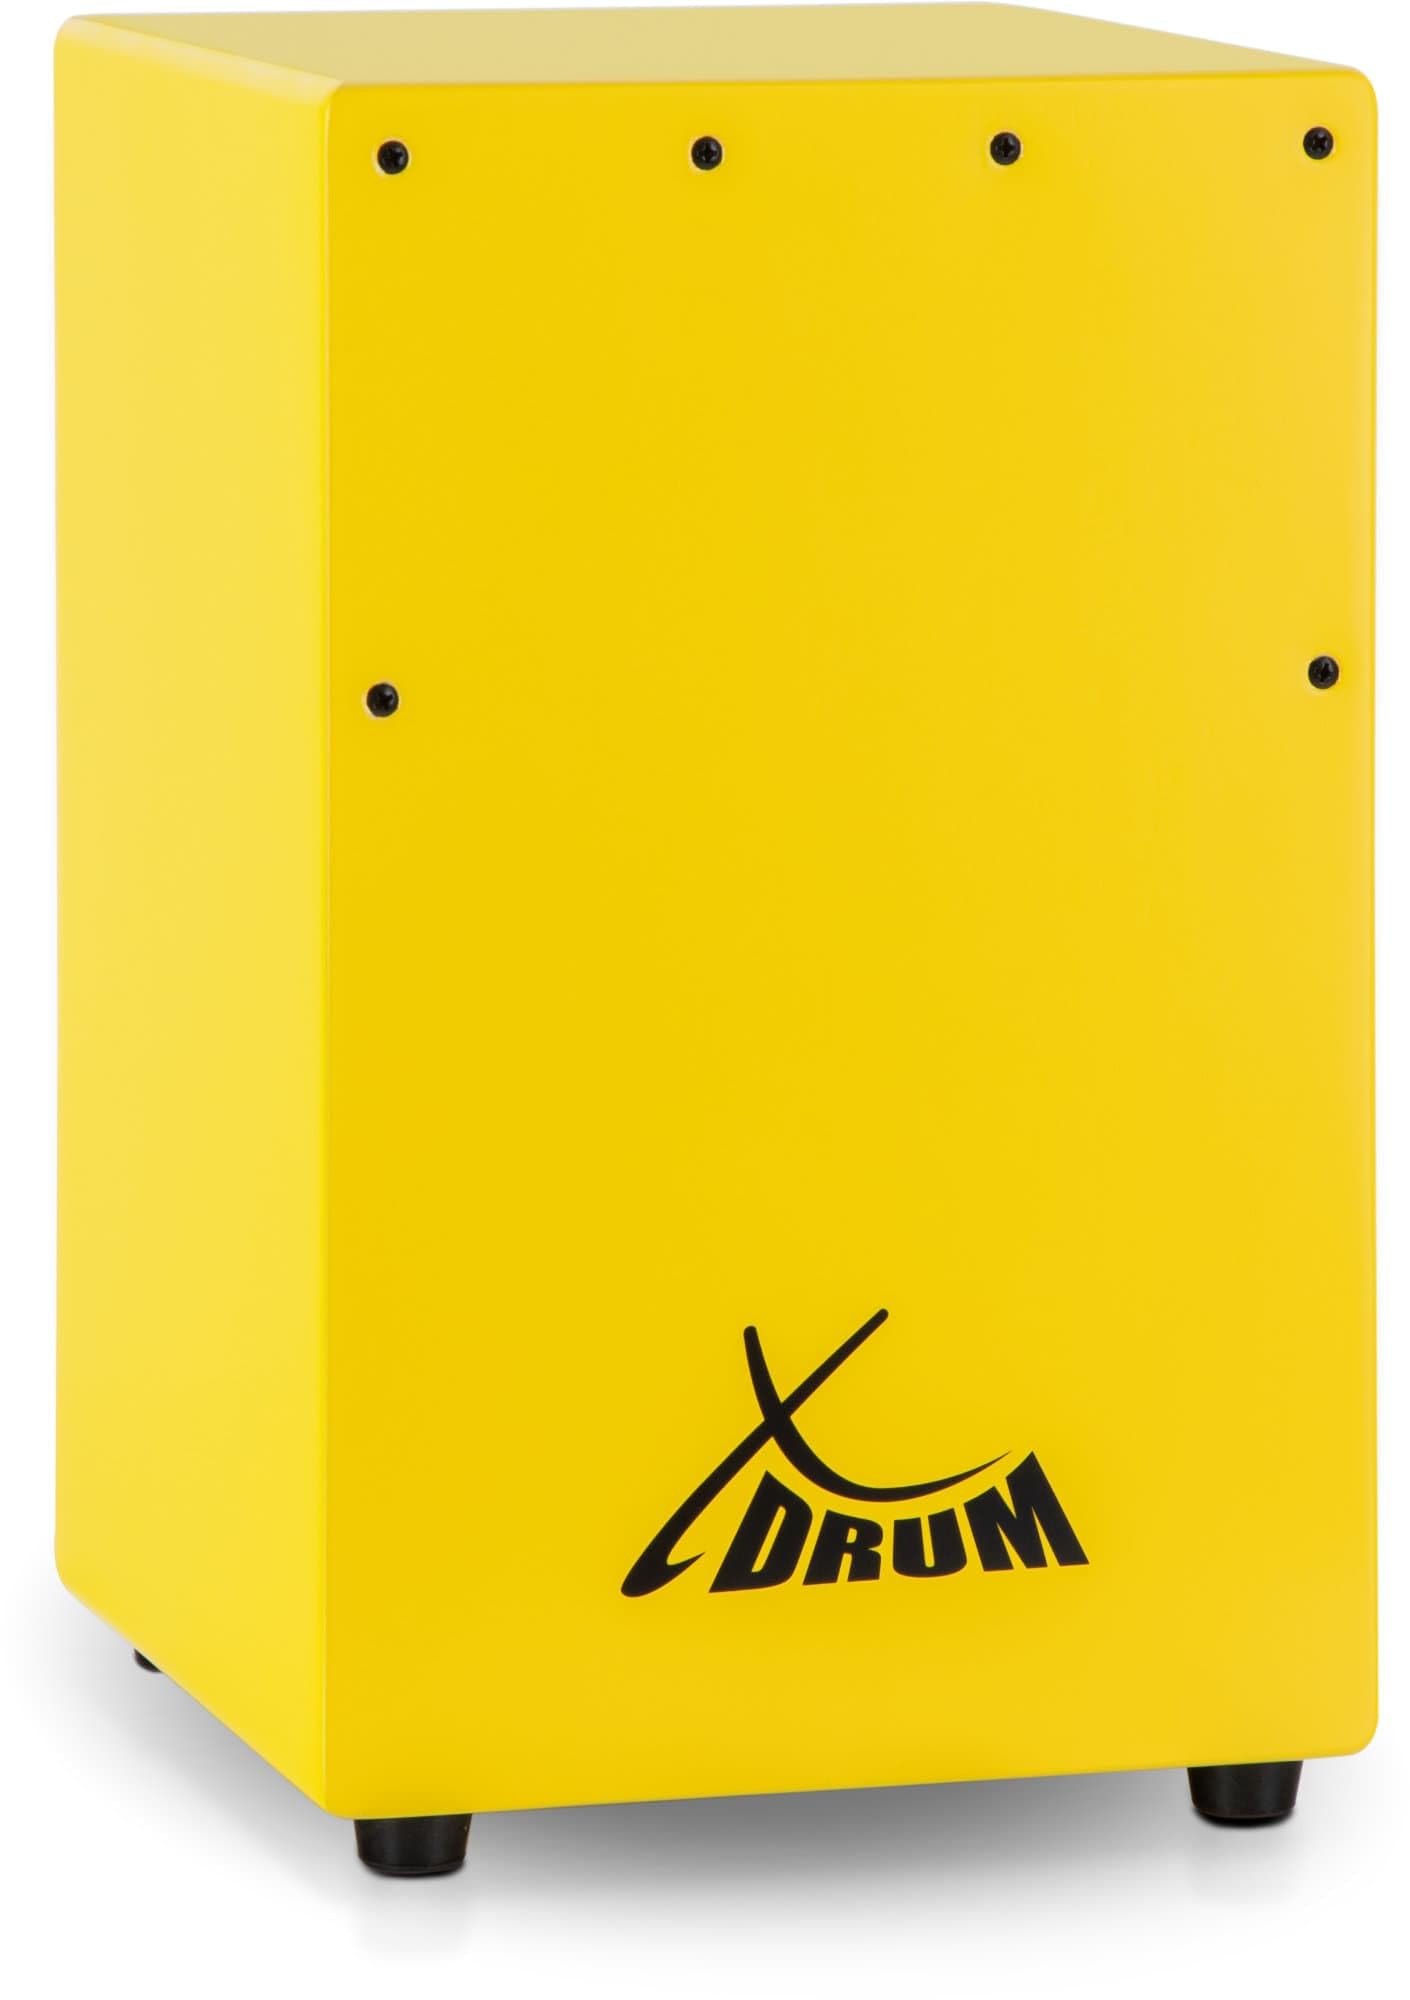 XDrum KC-37G Kinder-Cajon - Kleine Cajon speziell für Kinder - Nur 36 cm hoch - Snare-Effekt durch stimmbare Gitarrensaiten - gelb